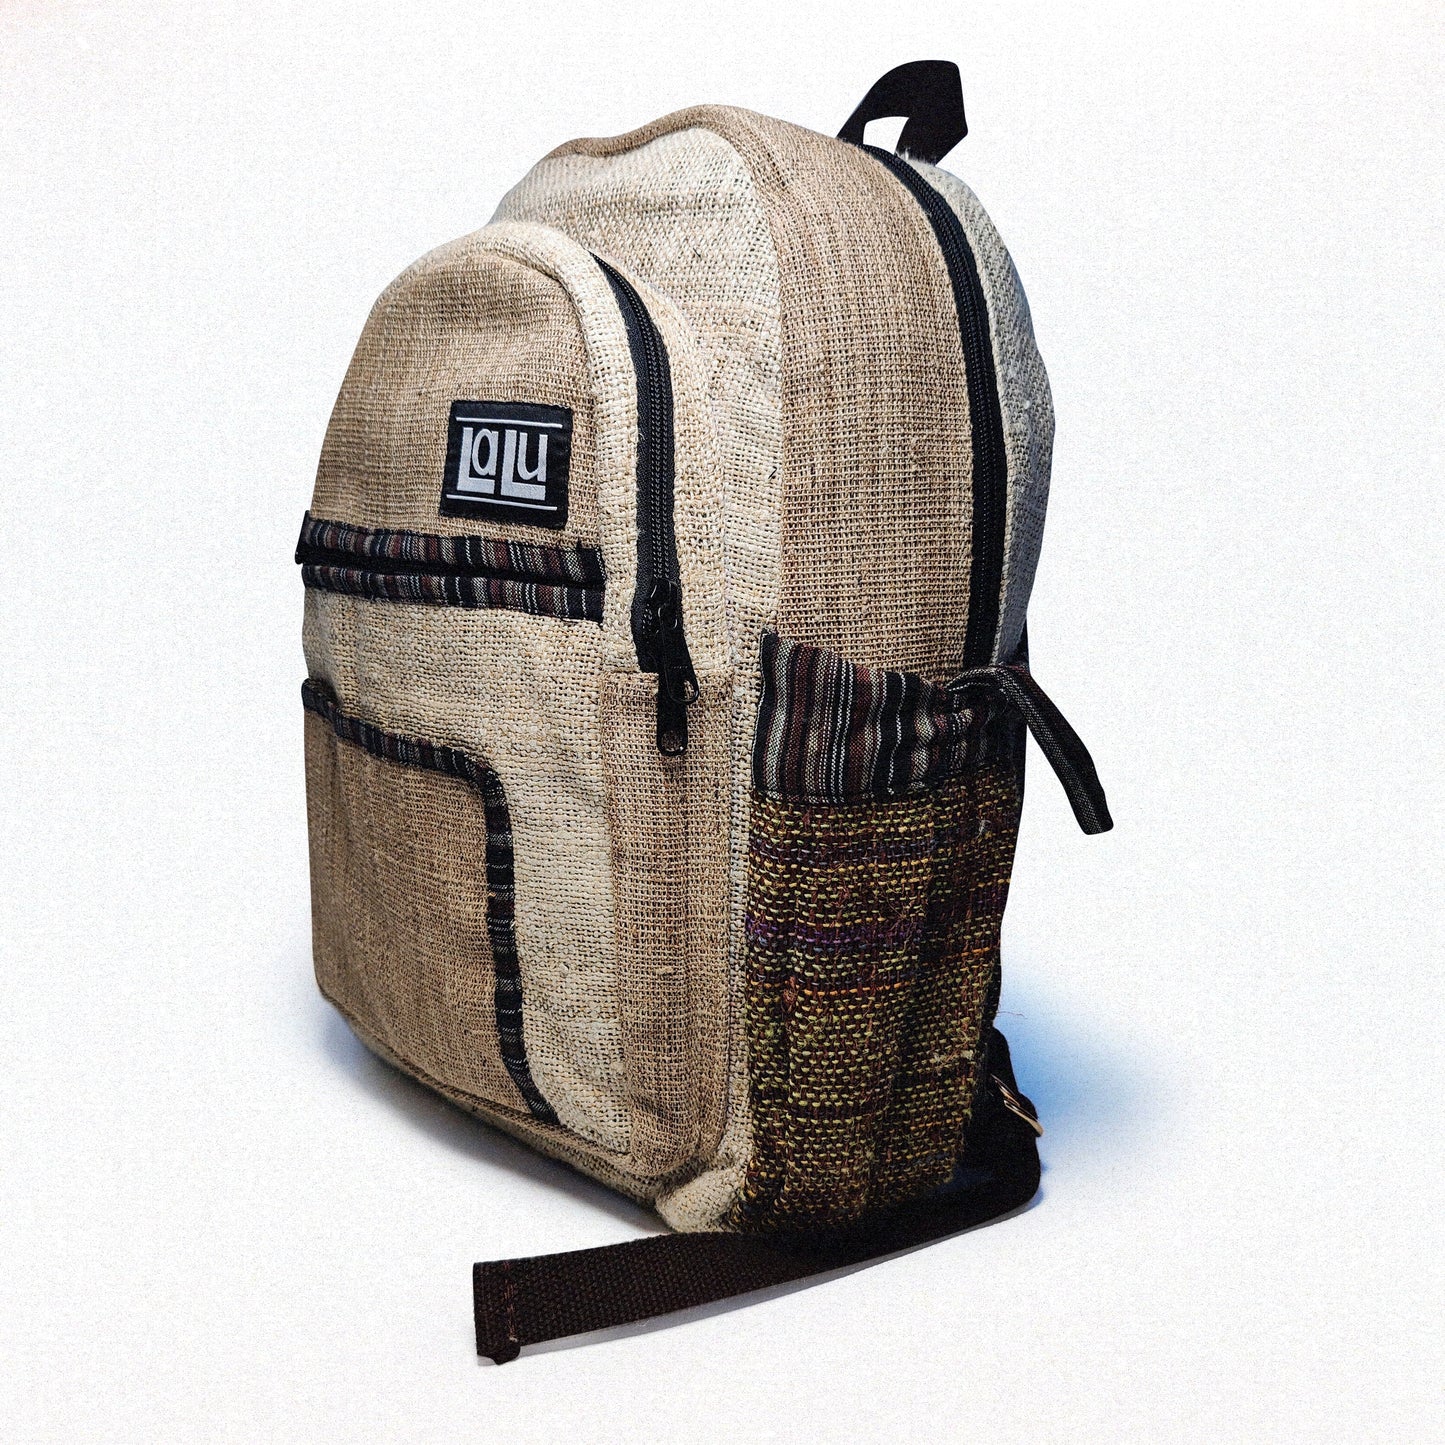 Rupa Nataural Backpack | Organic Hemp and Nettle